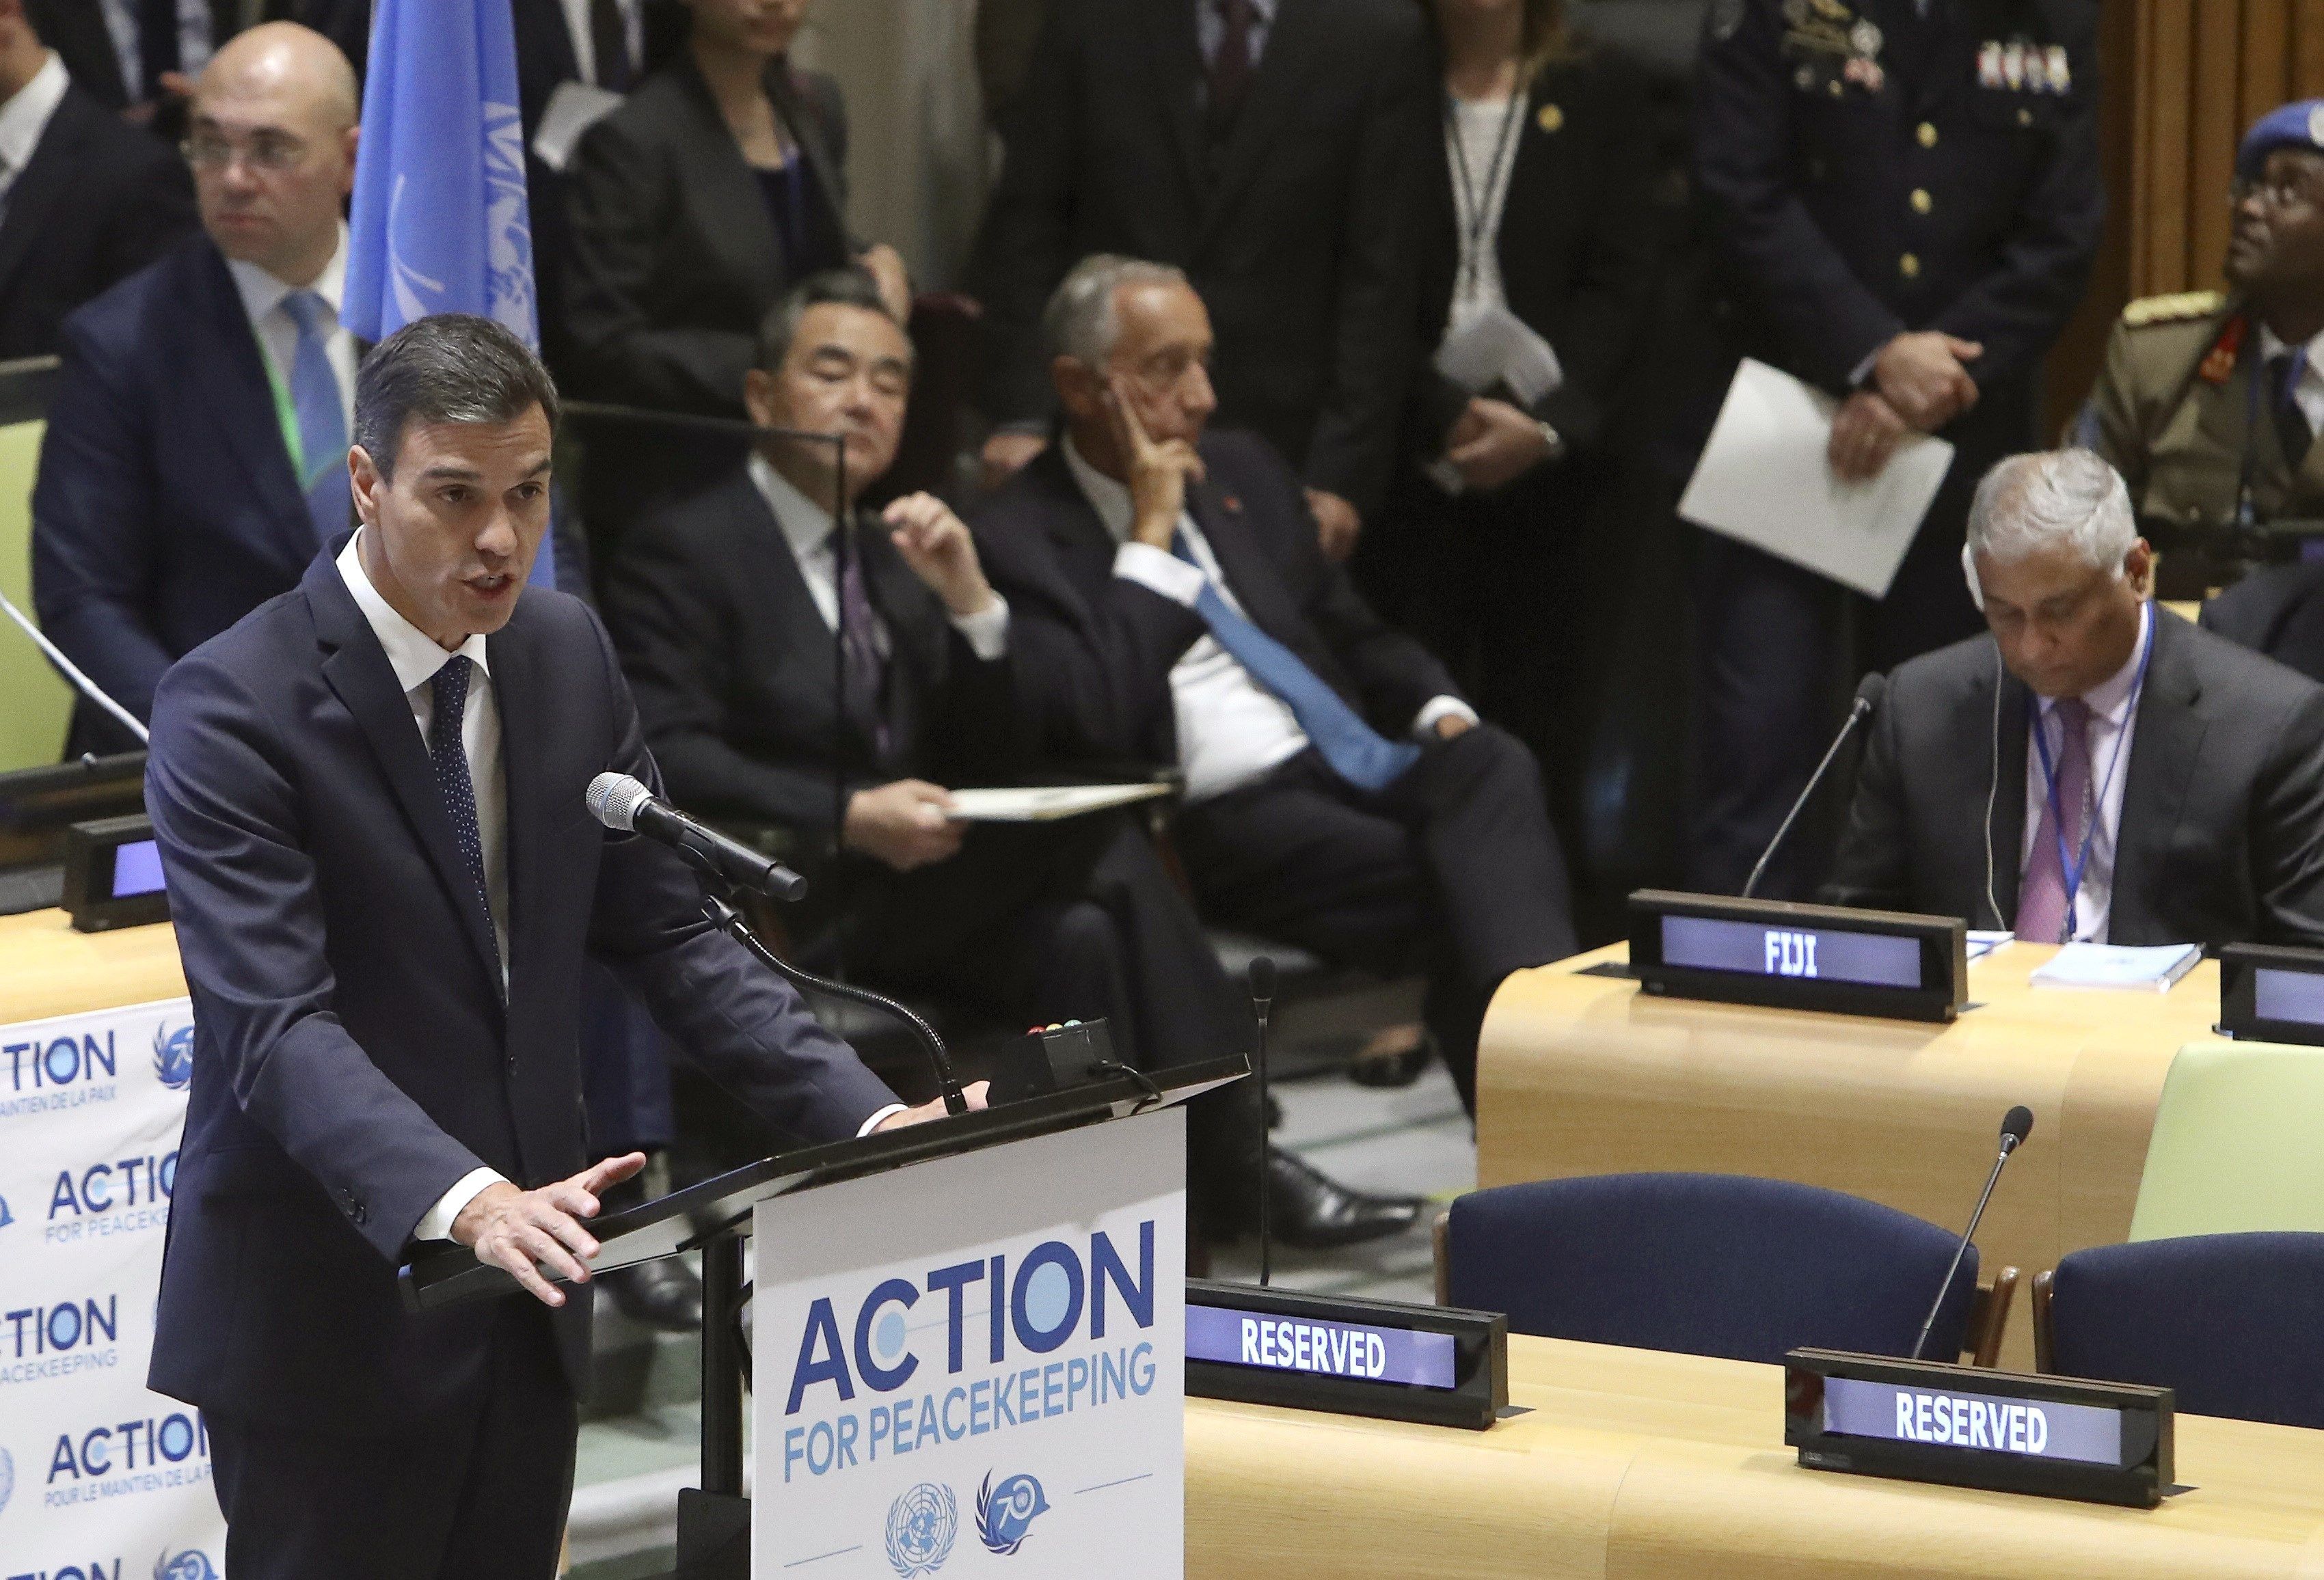 El presidente del Gobierno español, Pedro Sánchez, durante su intervención en la reunión de alto nivel sobre acción para el mantenimiento de la paz organizada en la sede de Naciones Unidas, en Nueva YorK. EFE